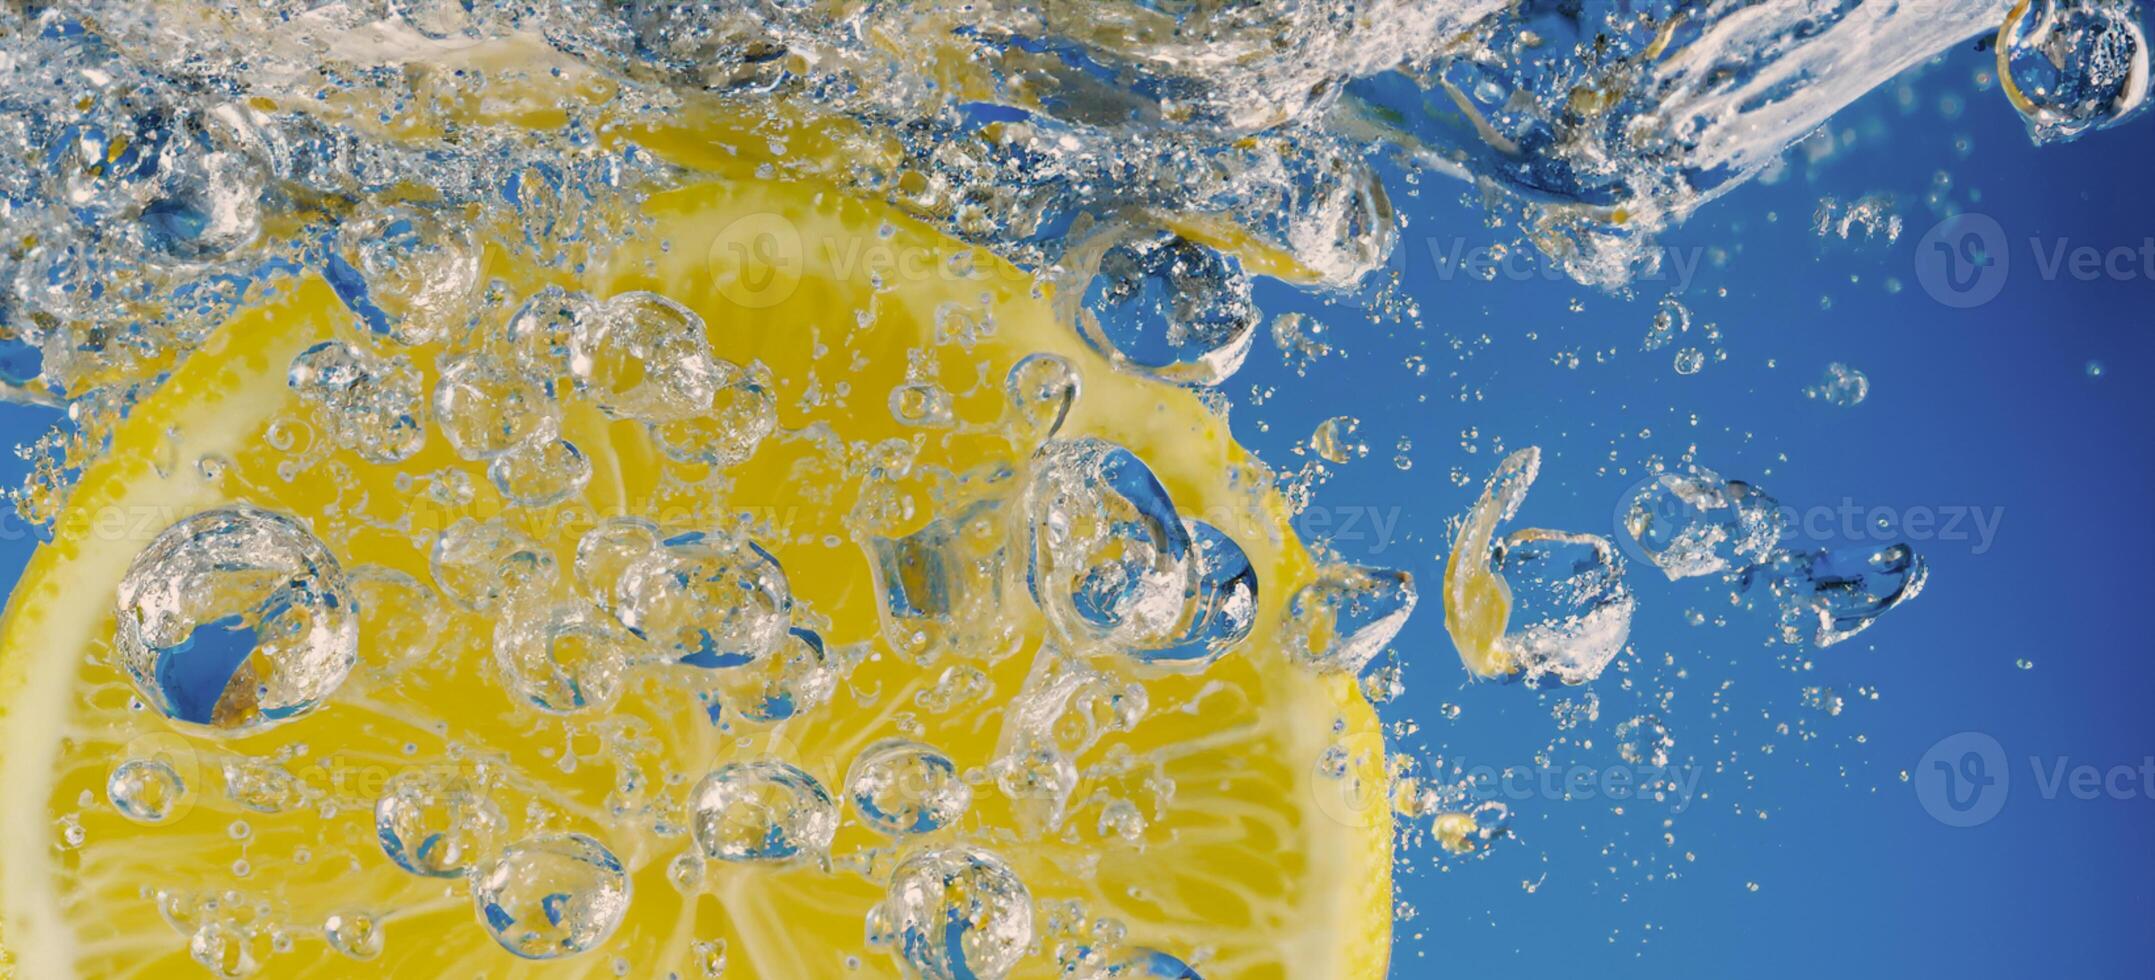 under vattnet citron- skiva i soda vatten eller citronsaft med bubblor. foto